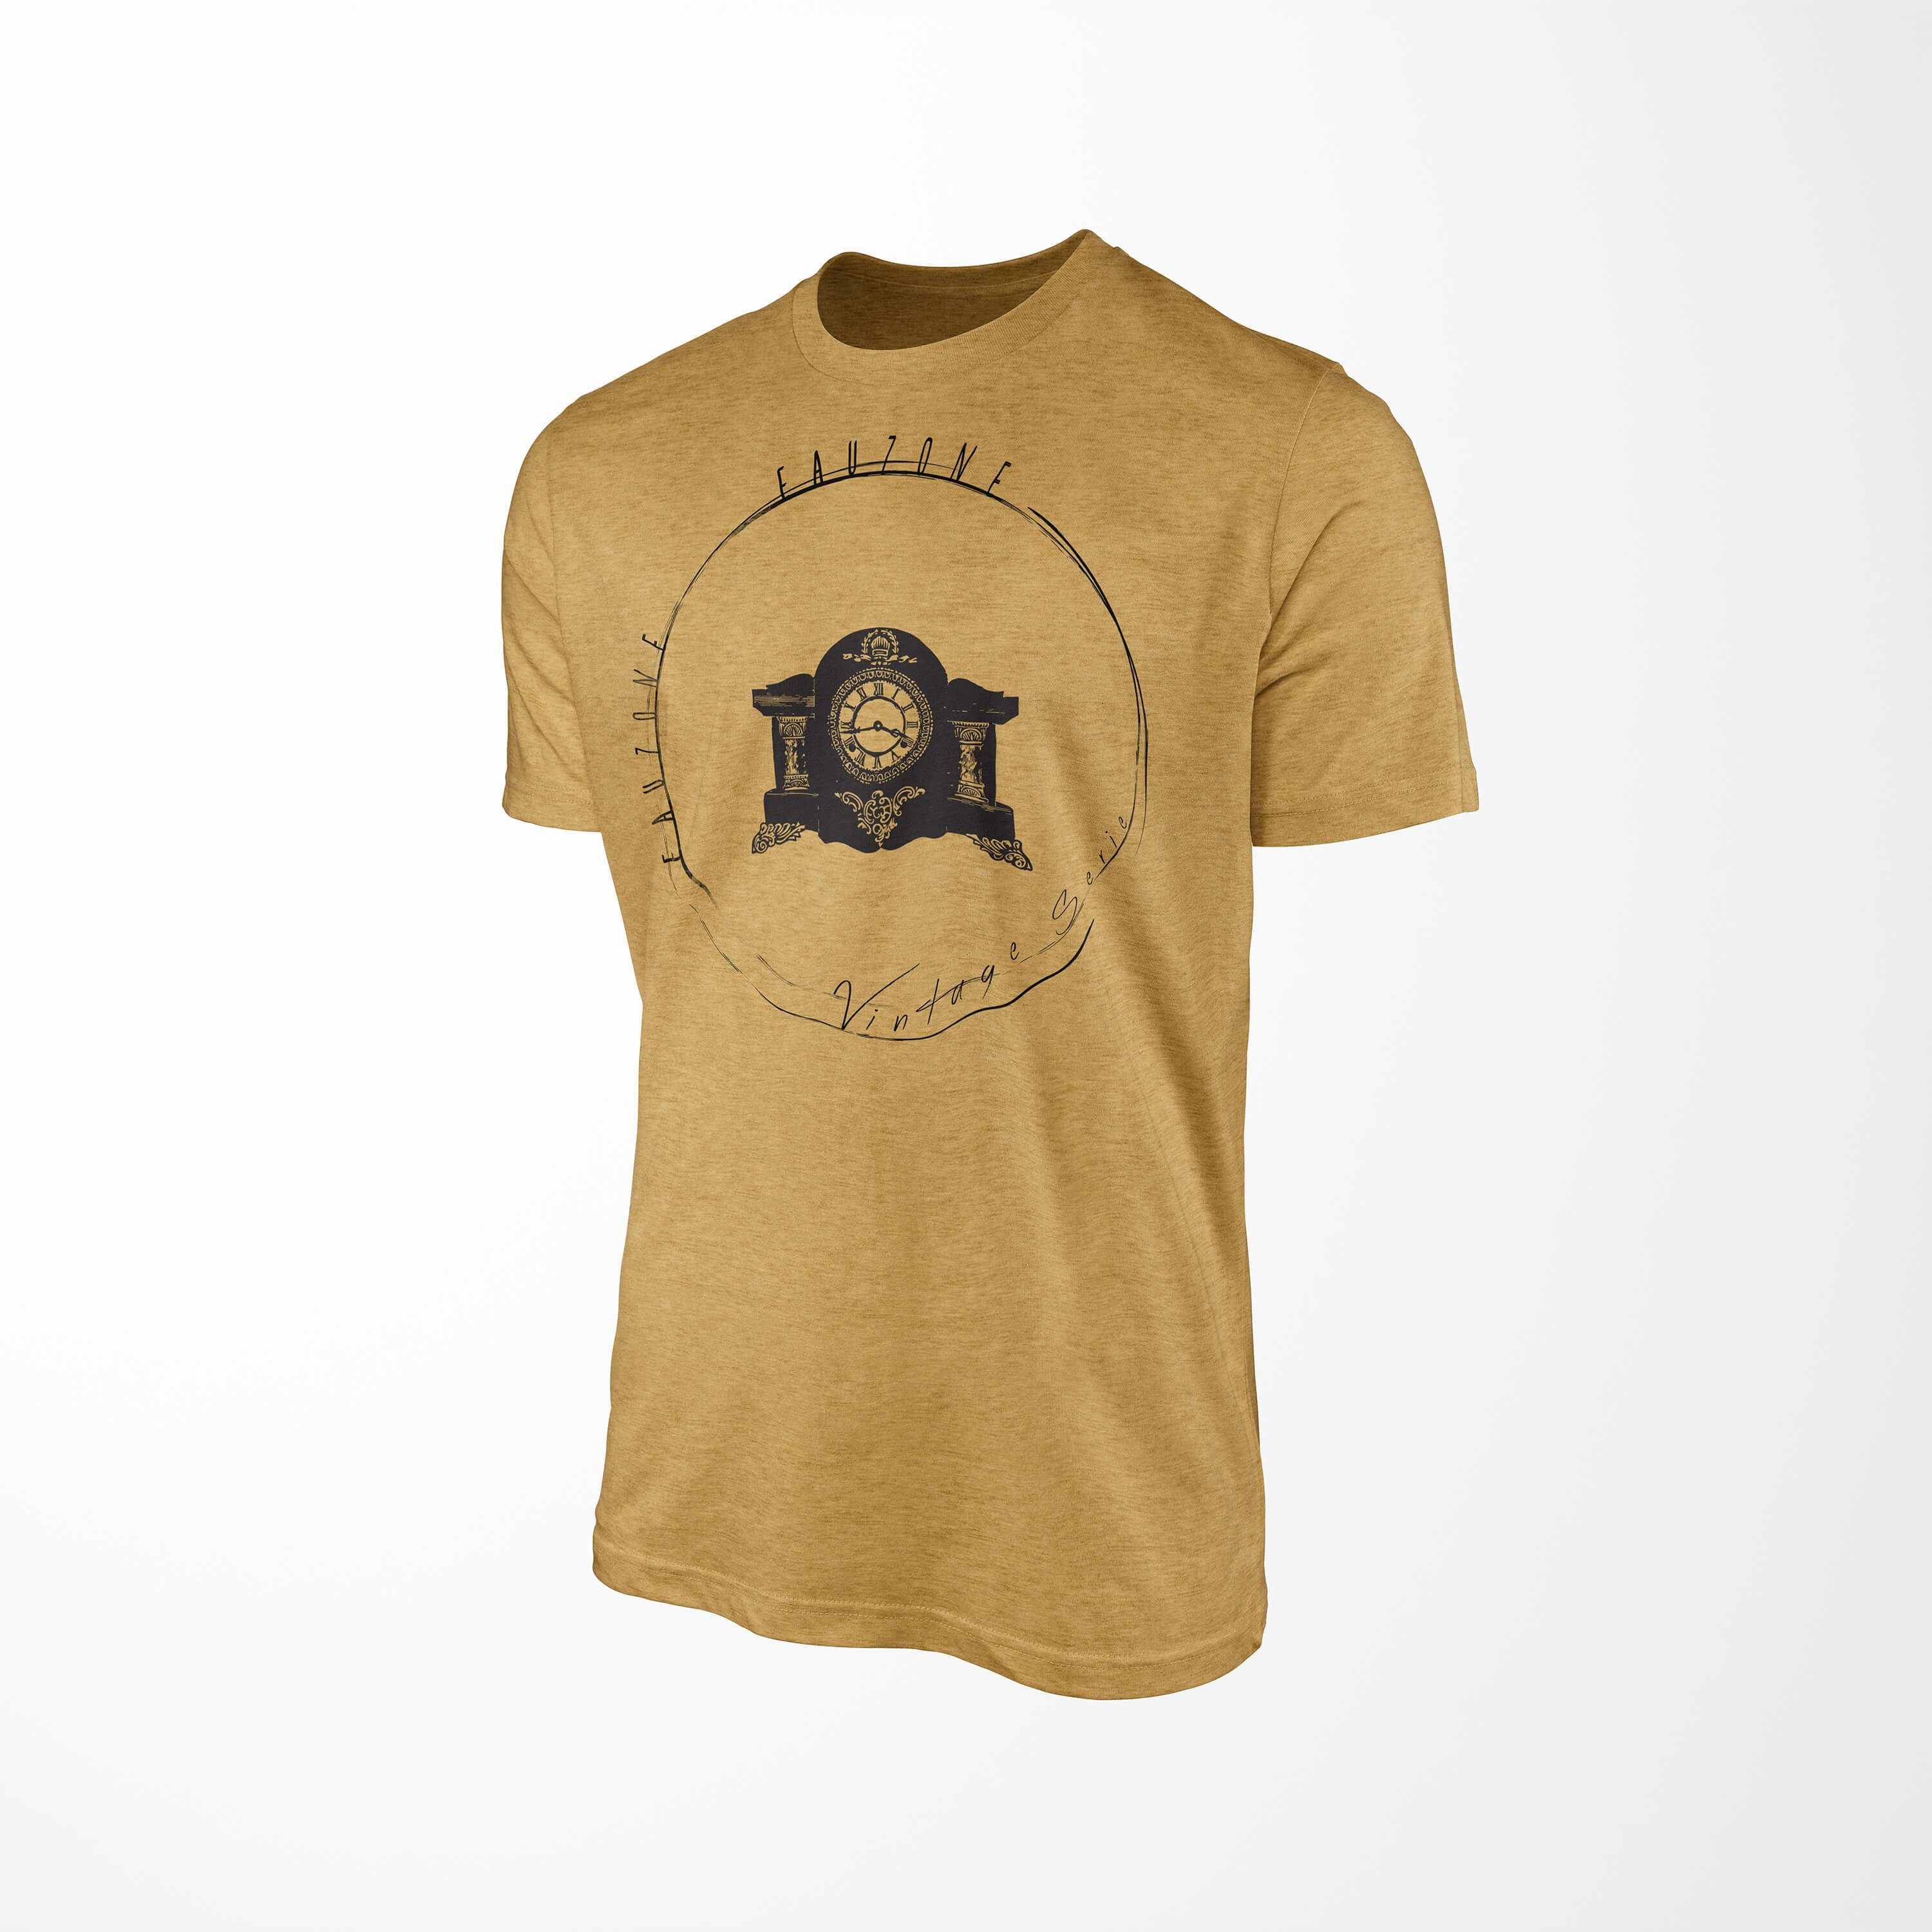 Sinus Art T-Shirt Vintage Herren Kaminuhr T-Shirt Antique Gold